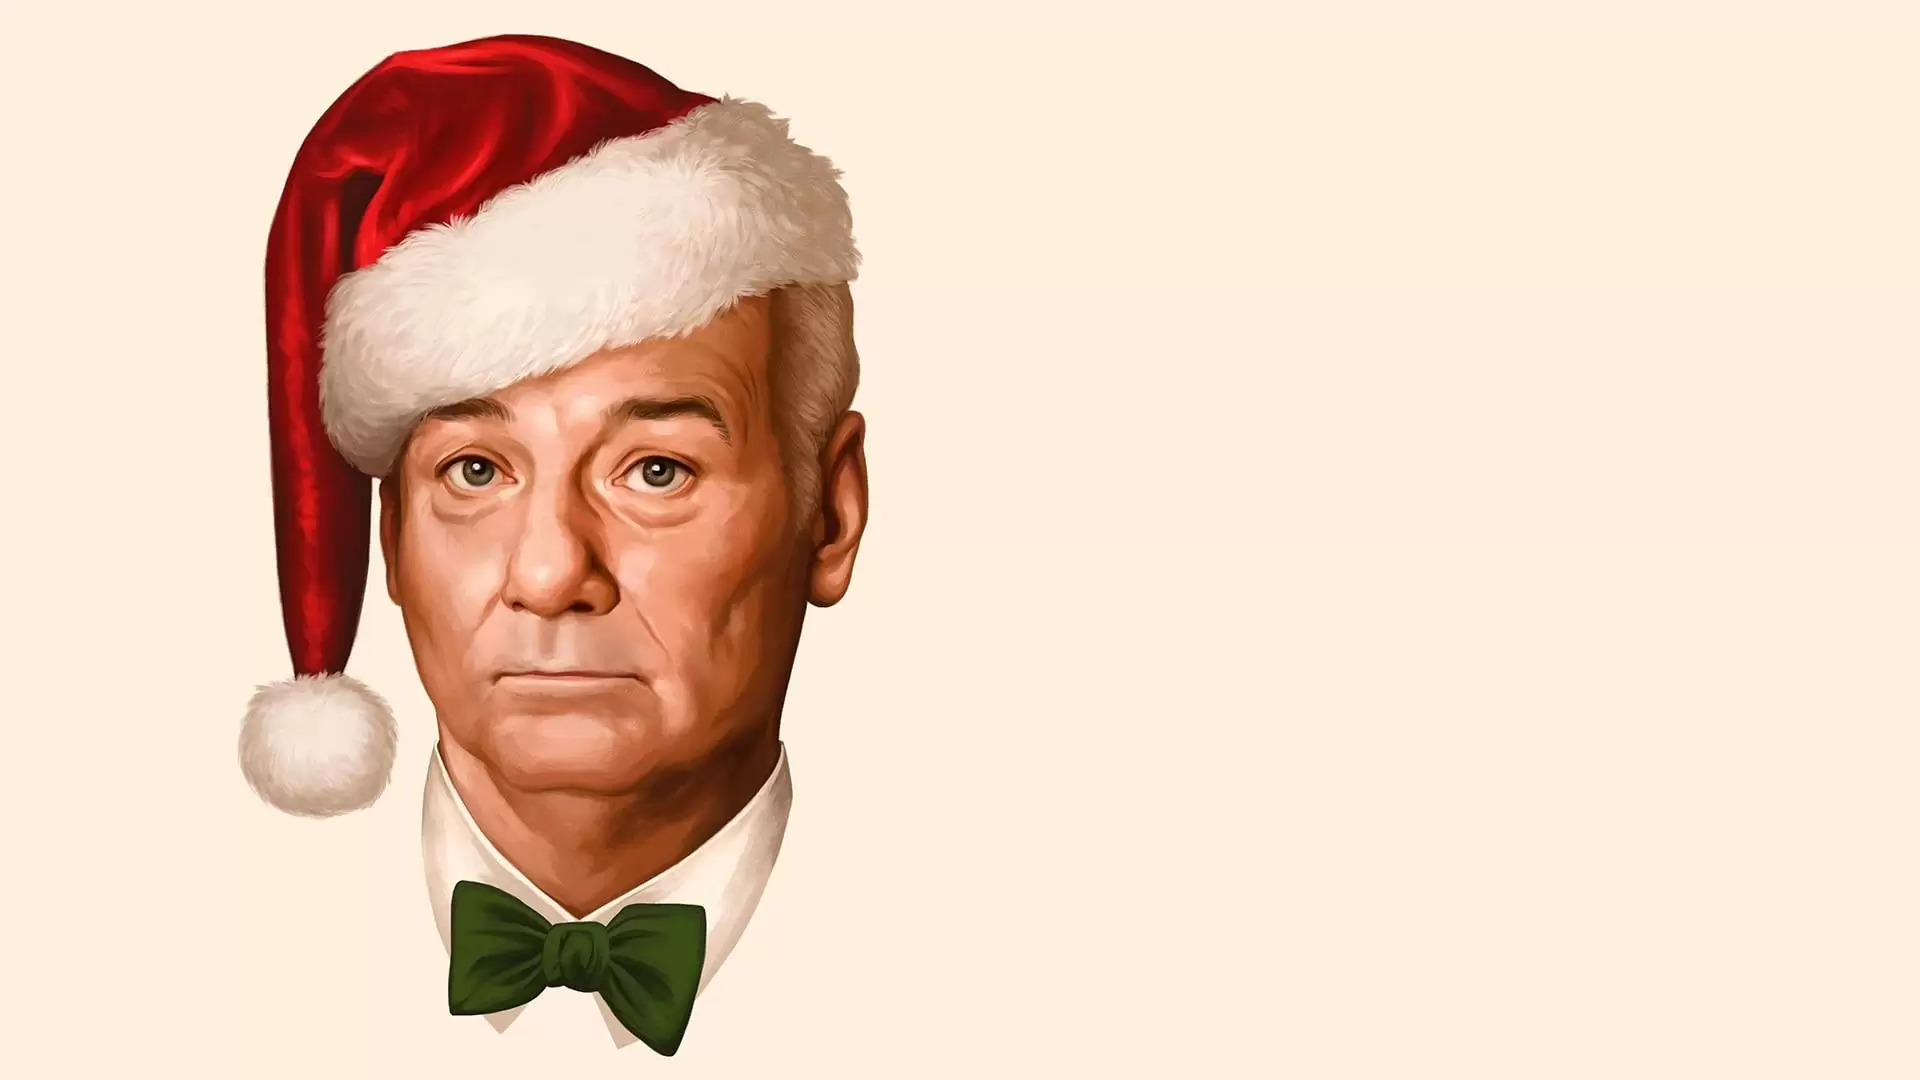 دانلود فیلم A Very Murray Christmas 2015 با زیرنویس فارسی